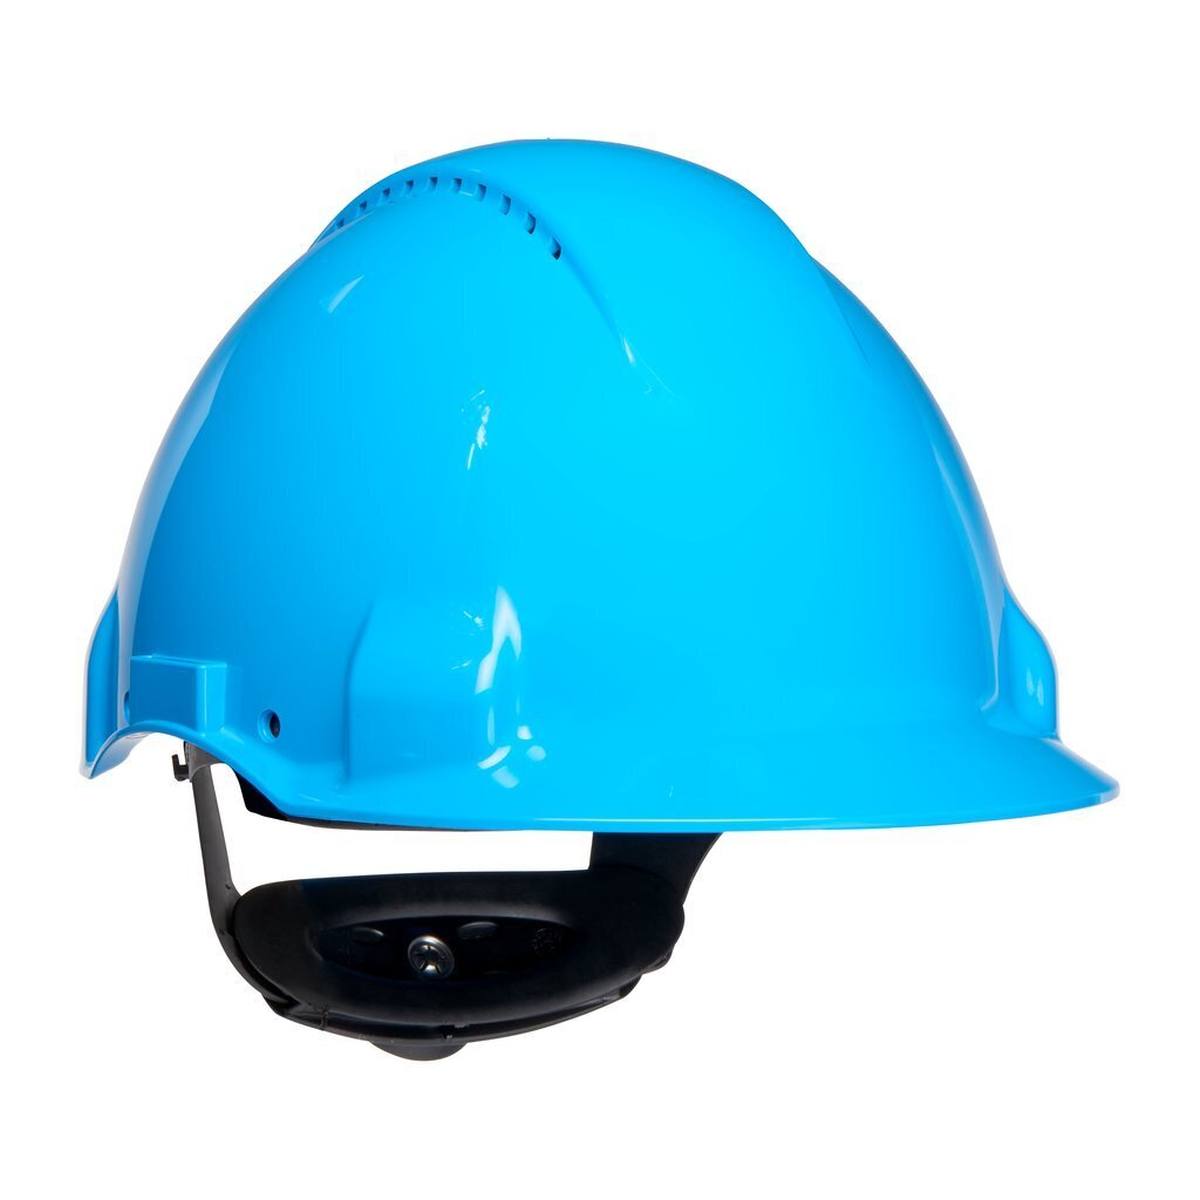 3M G3000 casque de protection G30NUB en bleu, ventilé, avec uvicator, cliquet et bande de soudure en plastique